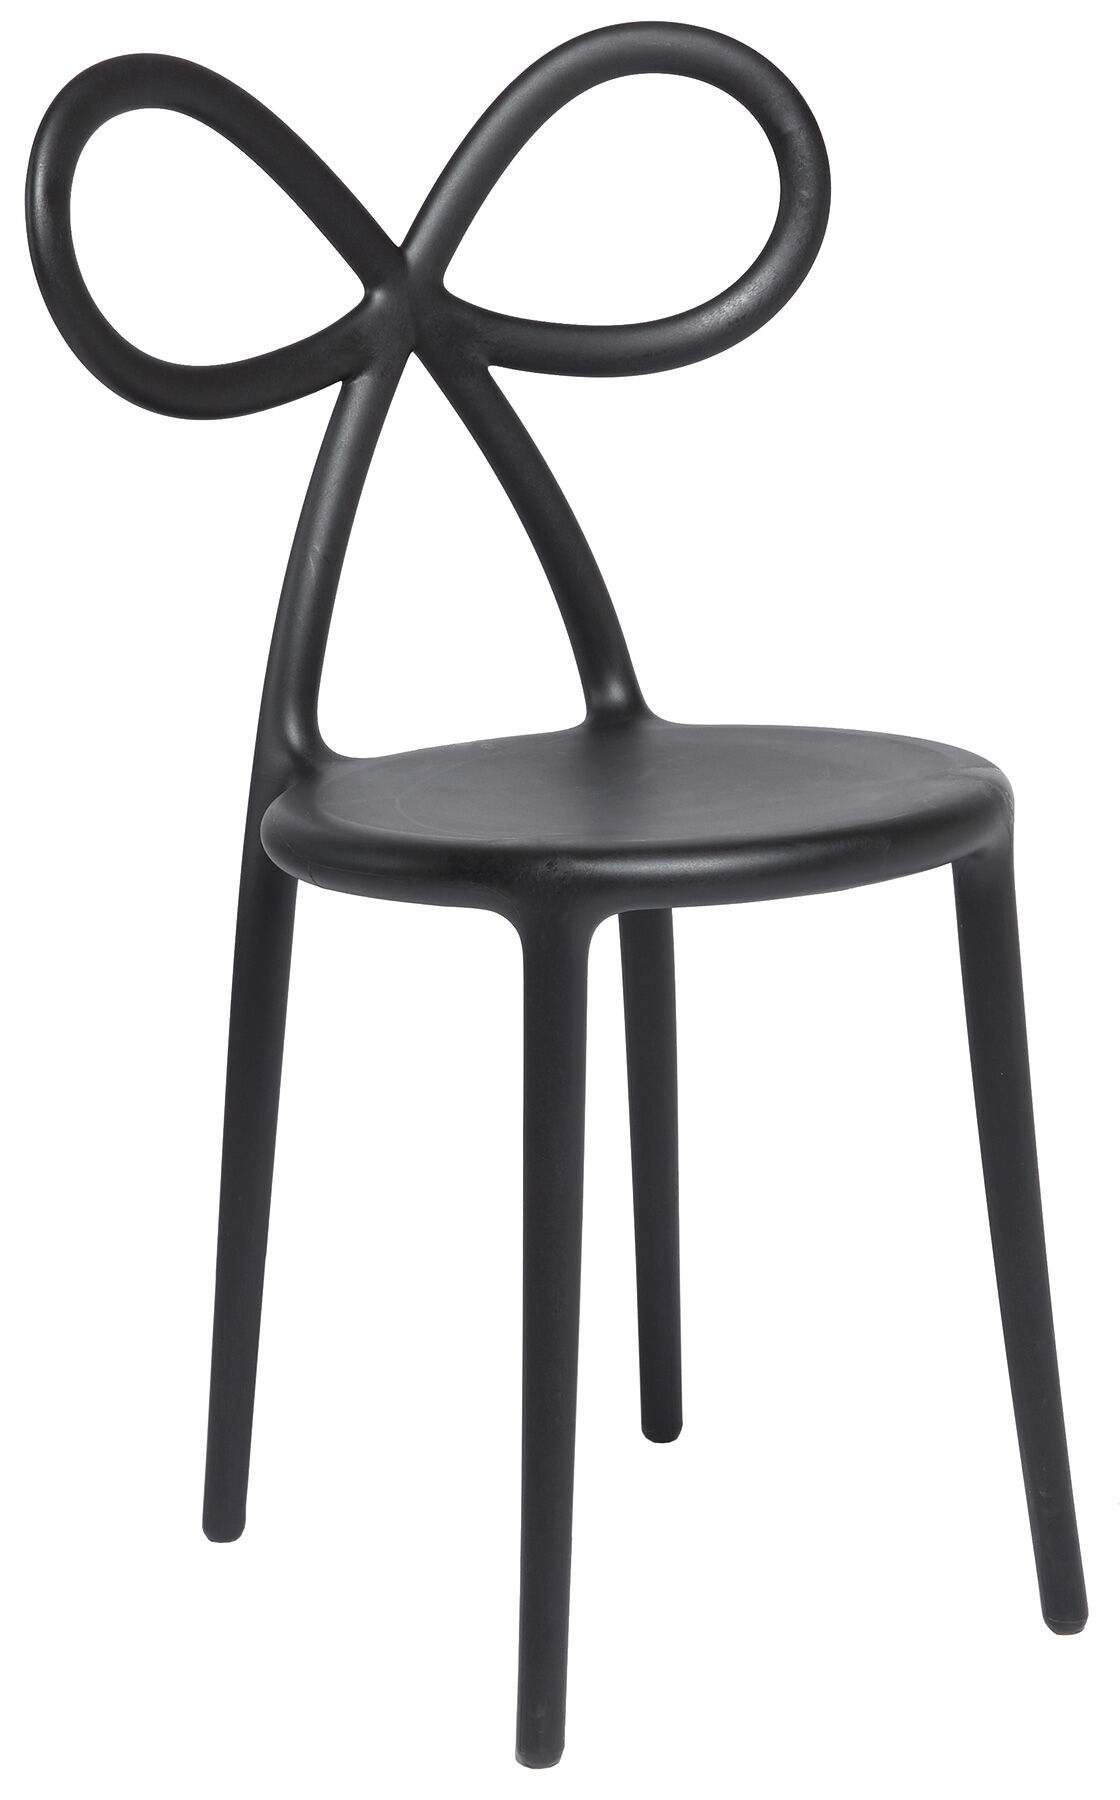 Designer-Stuhl "Ribbon Chair", schwarze Version - Design Nika Zupanc von Qeeboo